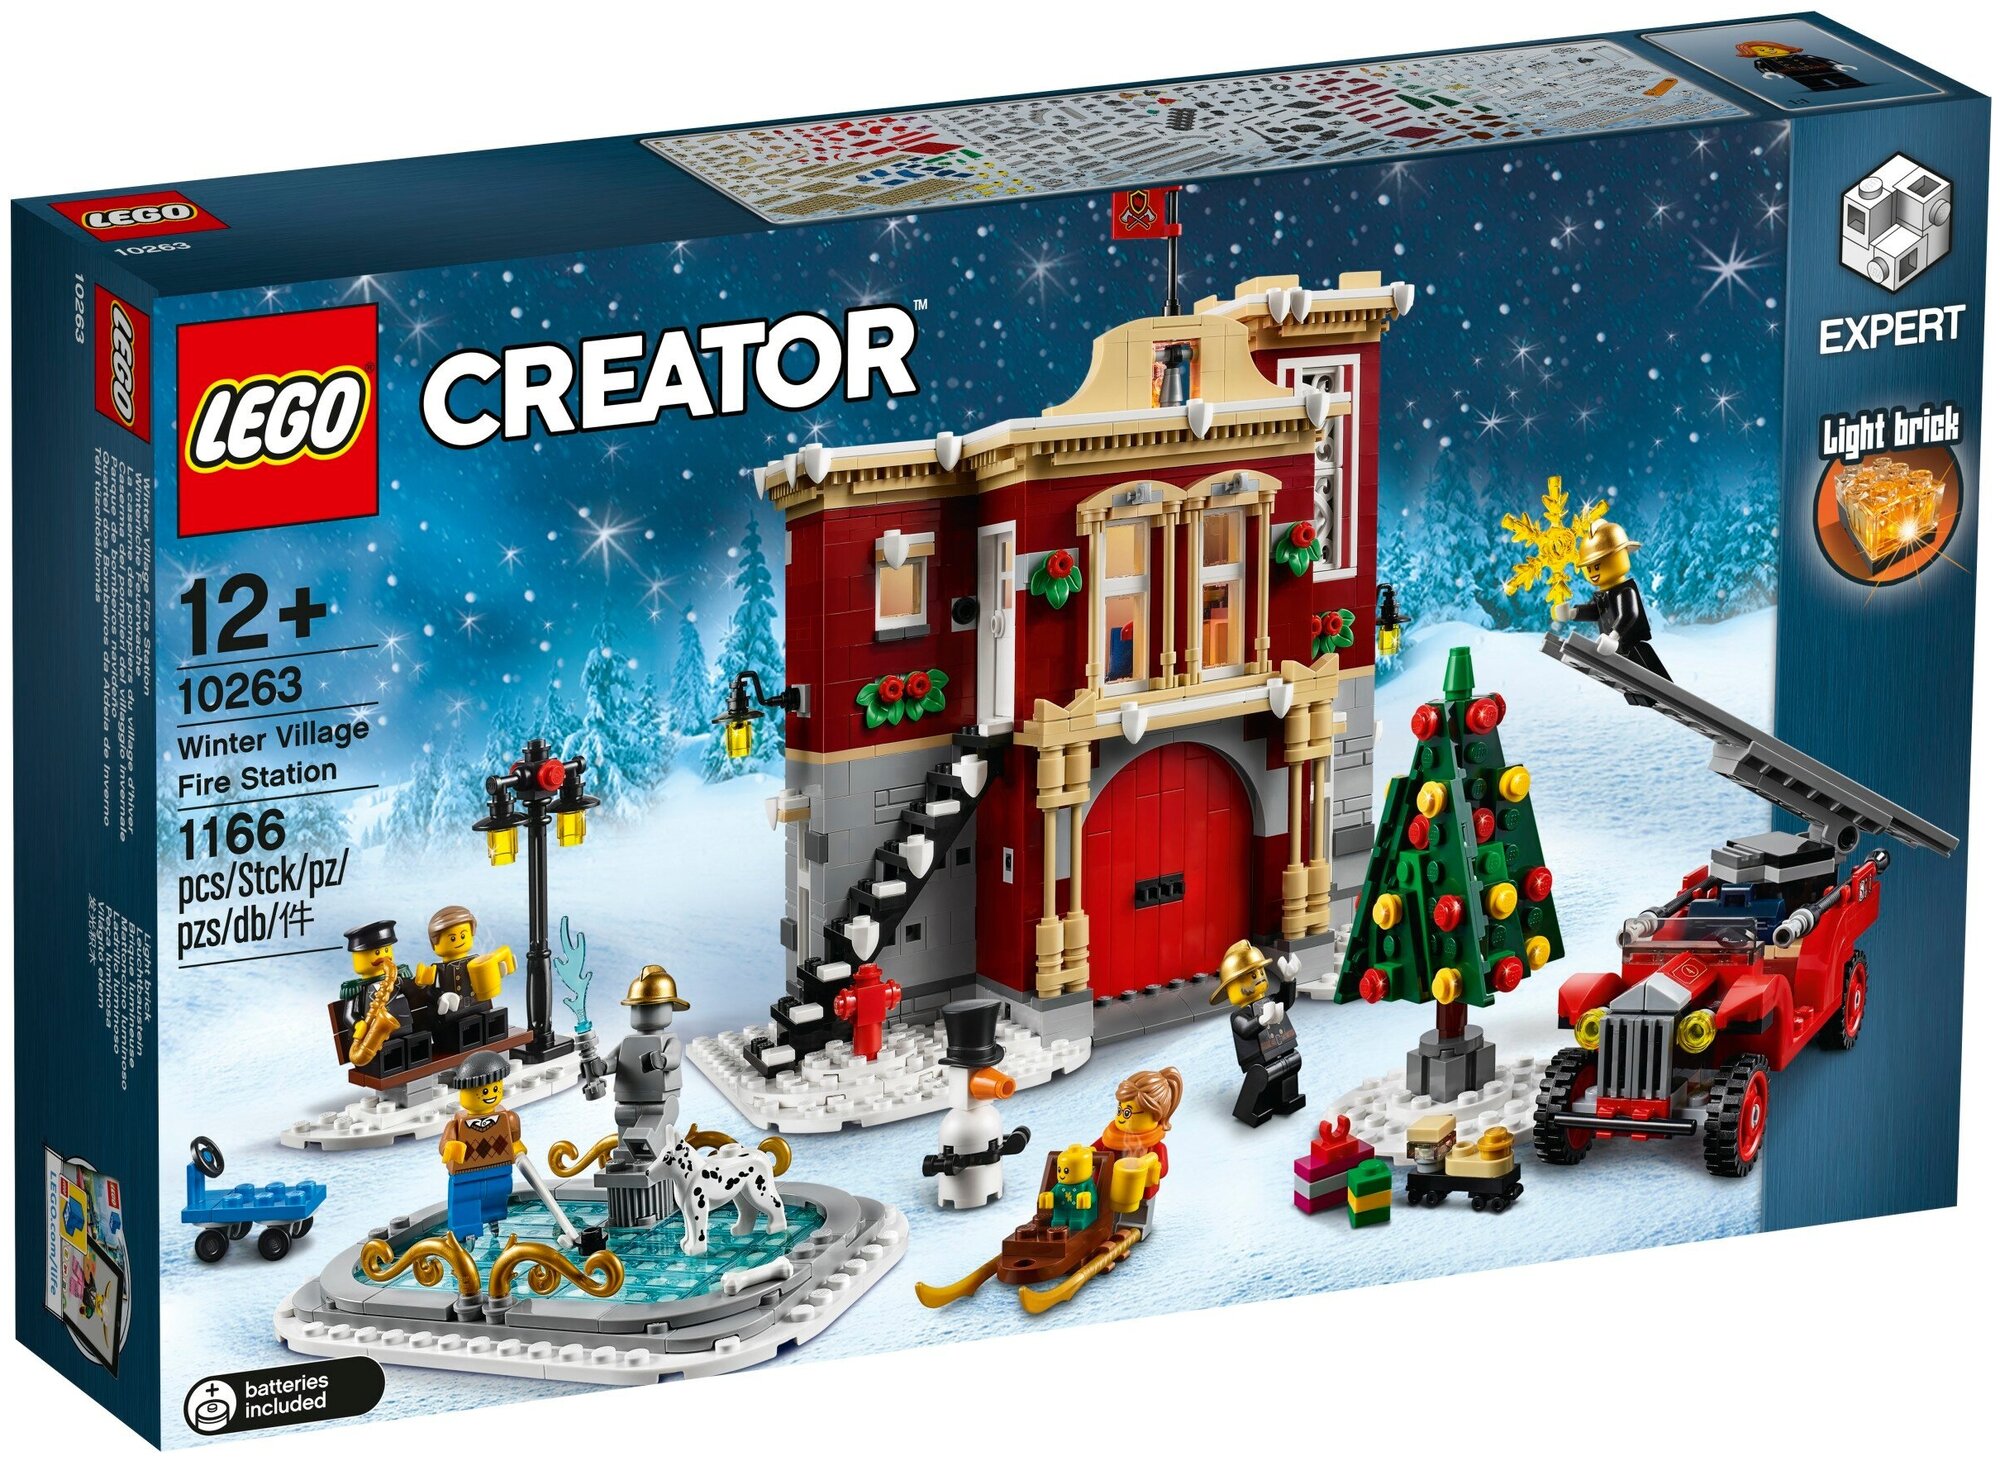 Конструктор LEGO Creator 10263 Пожарная часть в зимней деревне, 1166 дет.